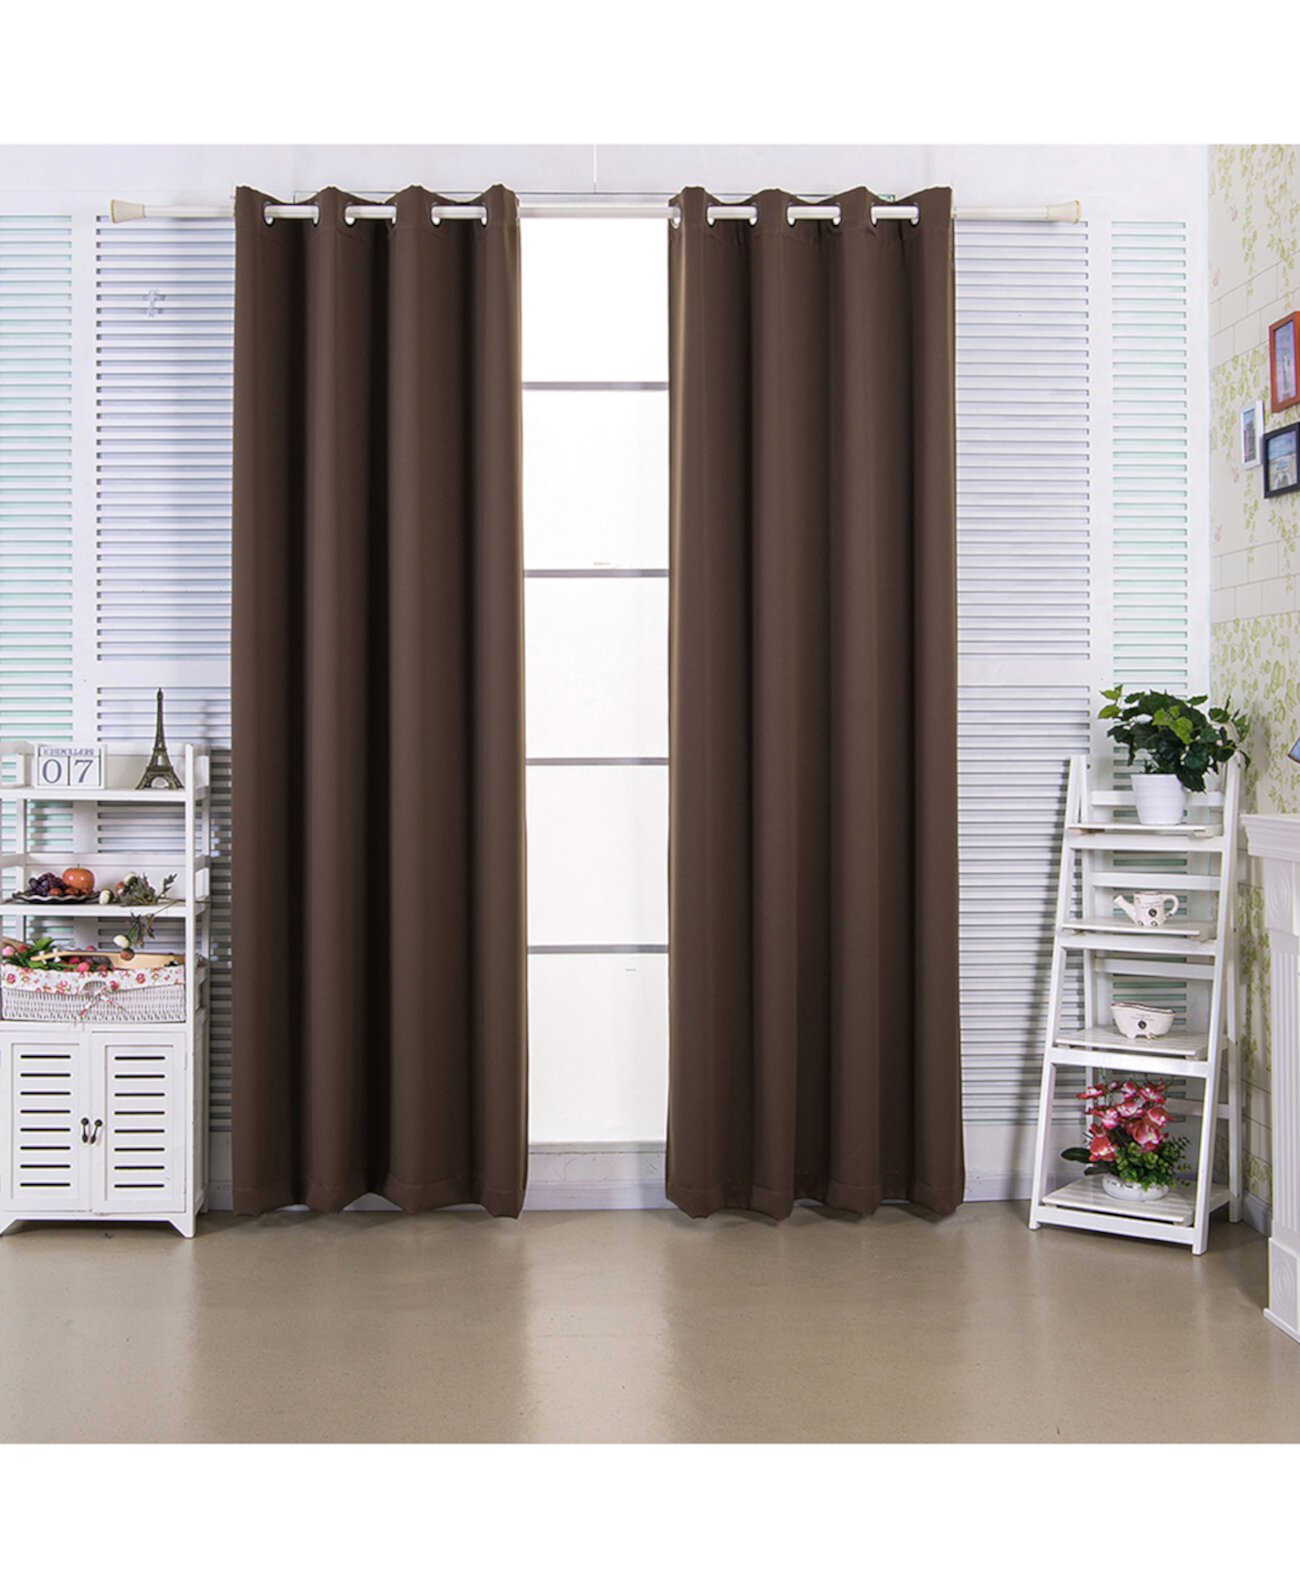 84-дюймовые оконные панели с плотной изоляцией Edessa Premium с термоизоляционными люверсами, орехово-коричневый цвет Elegant Home Fashions